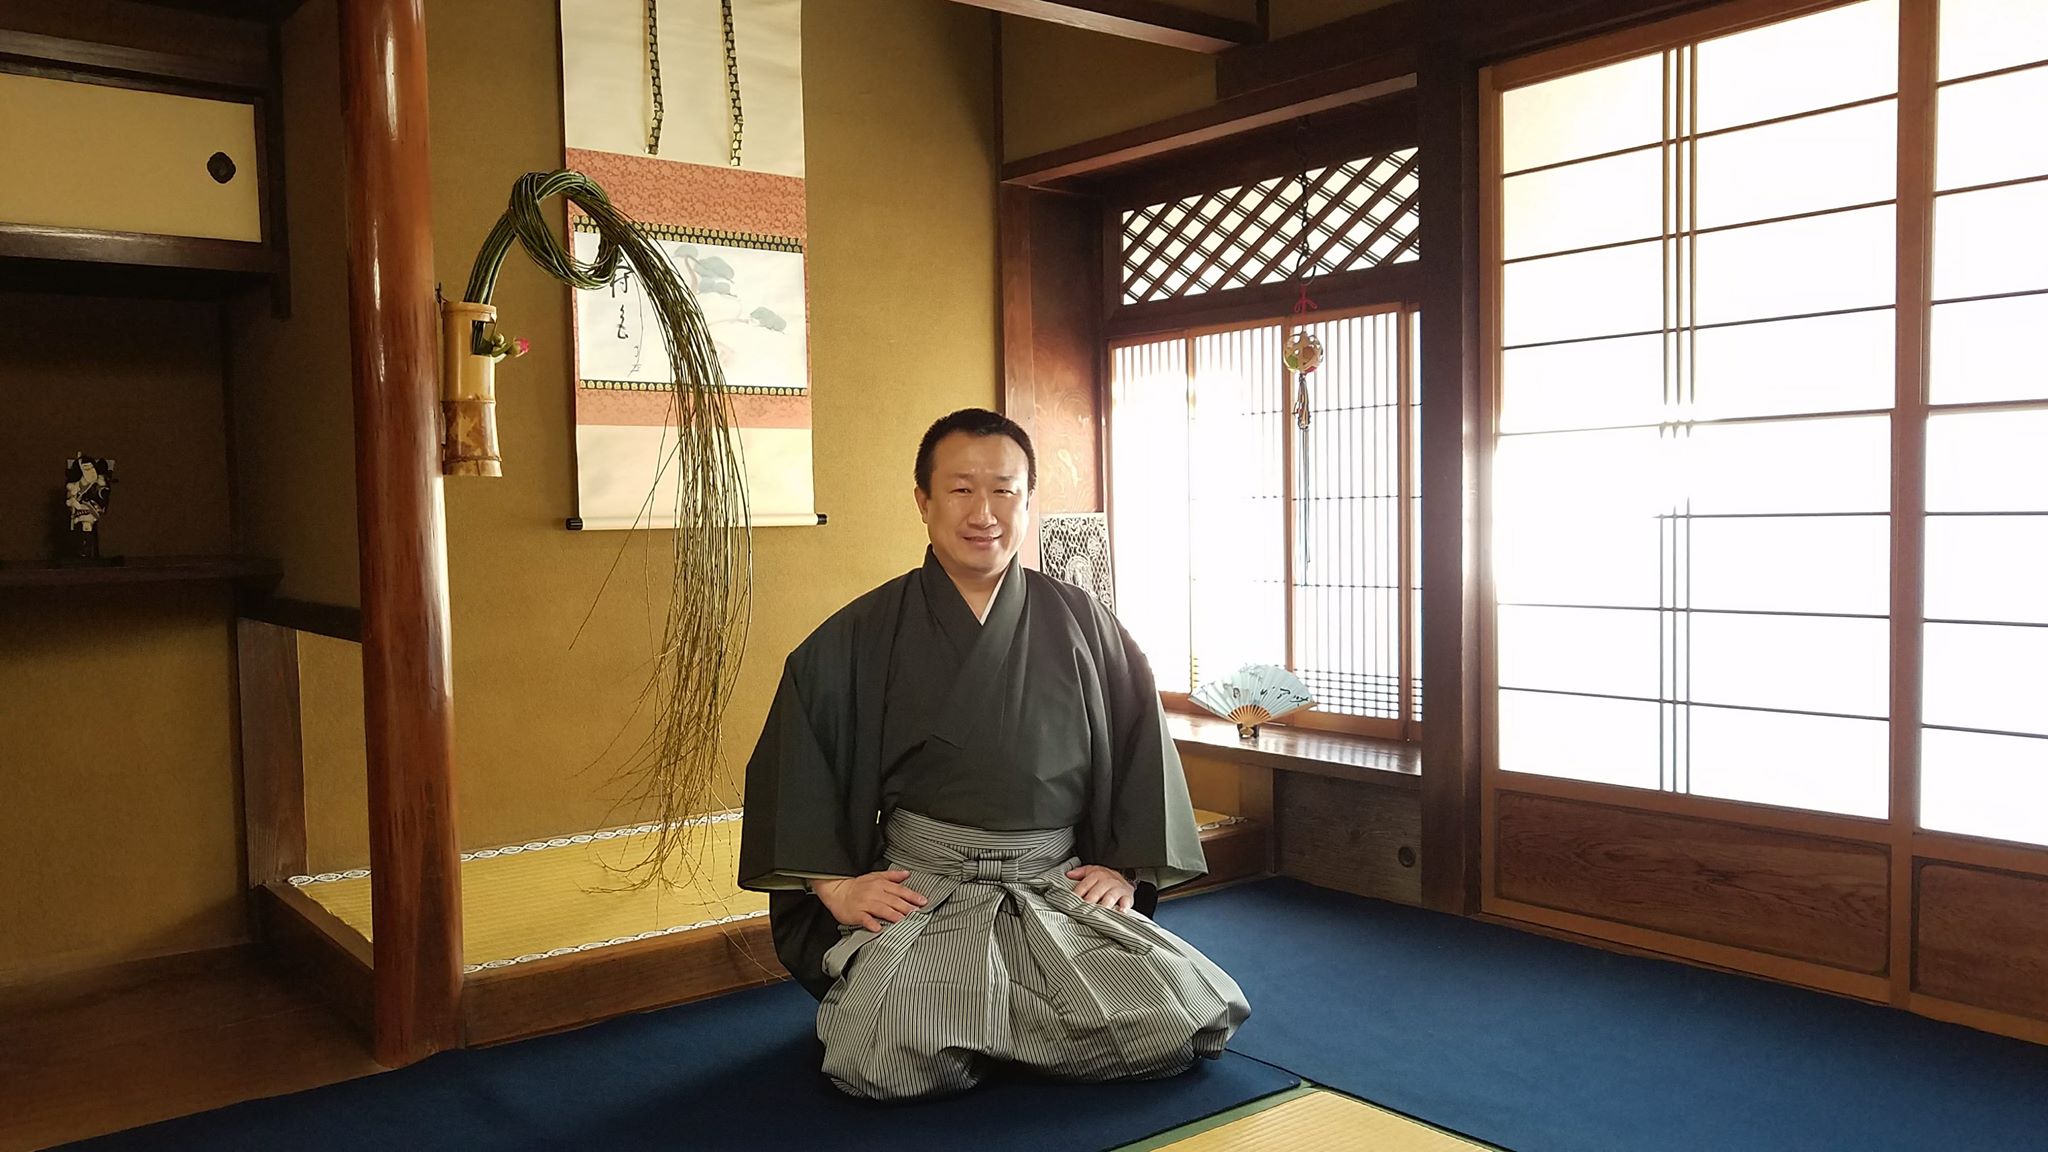 男性の袴姿はかっこいい 憧れます お茶と着物と袴の関係は 山本由紀子の京町家さろん